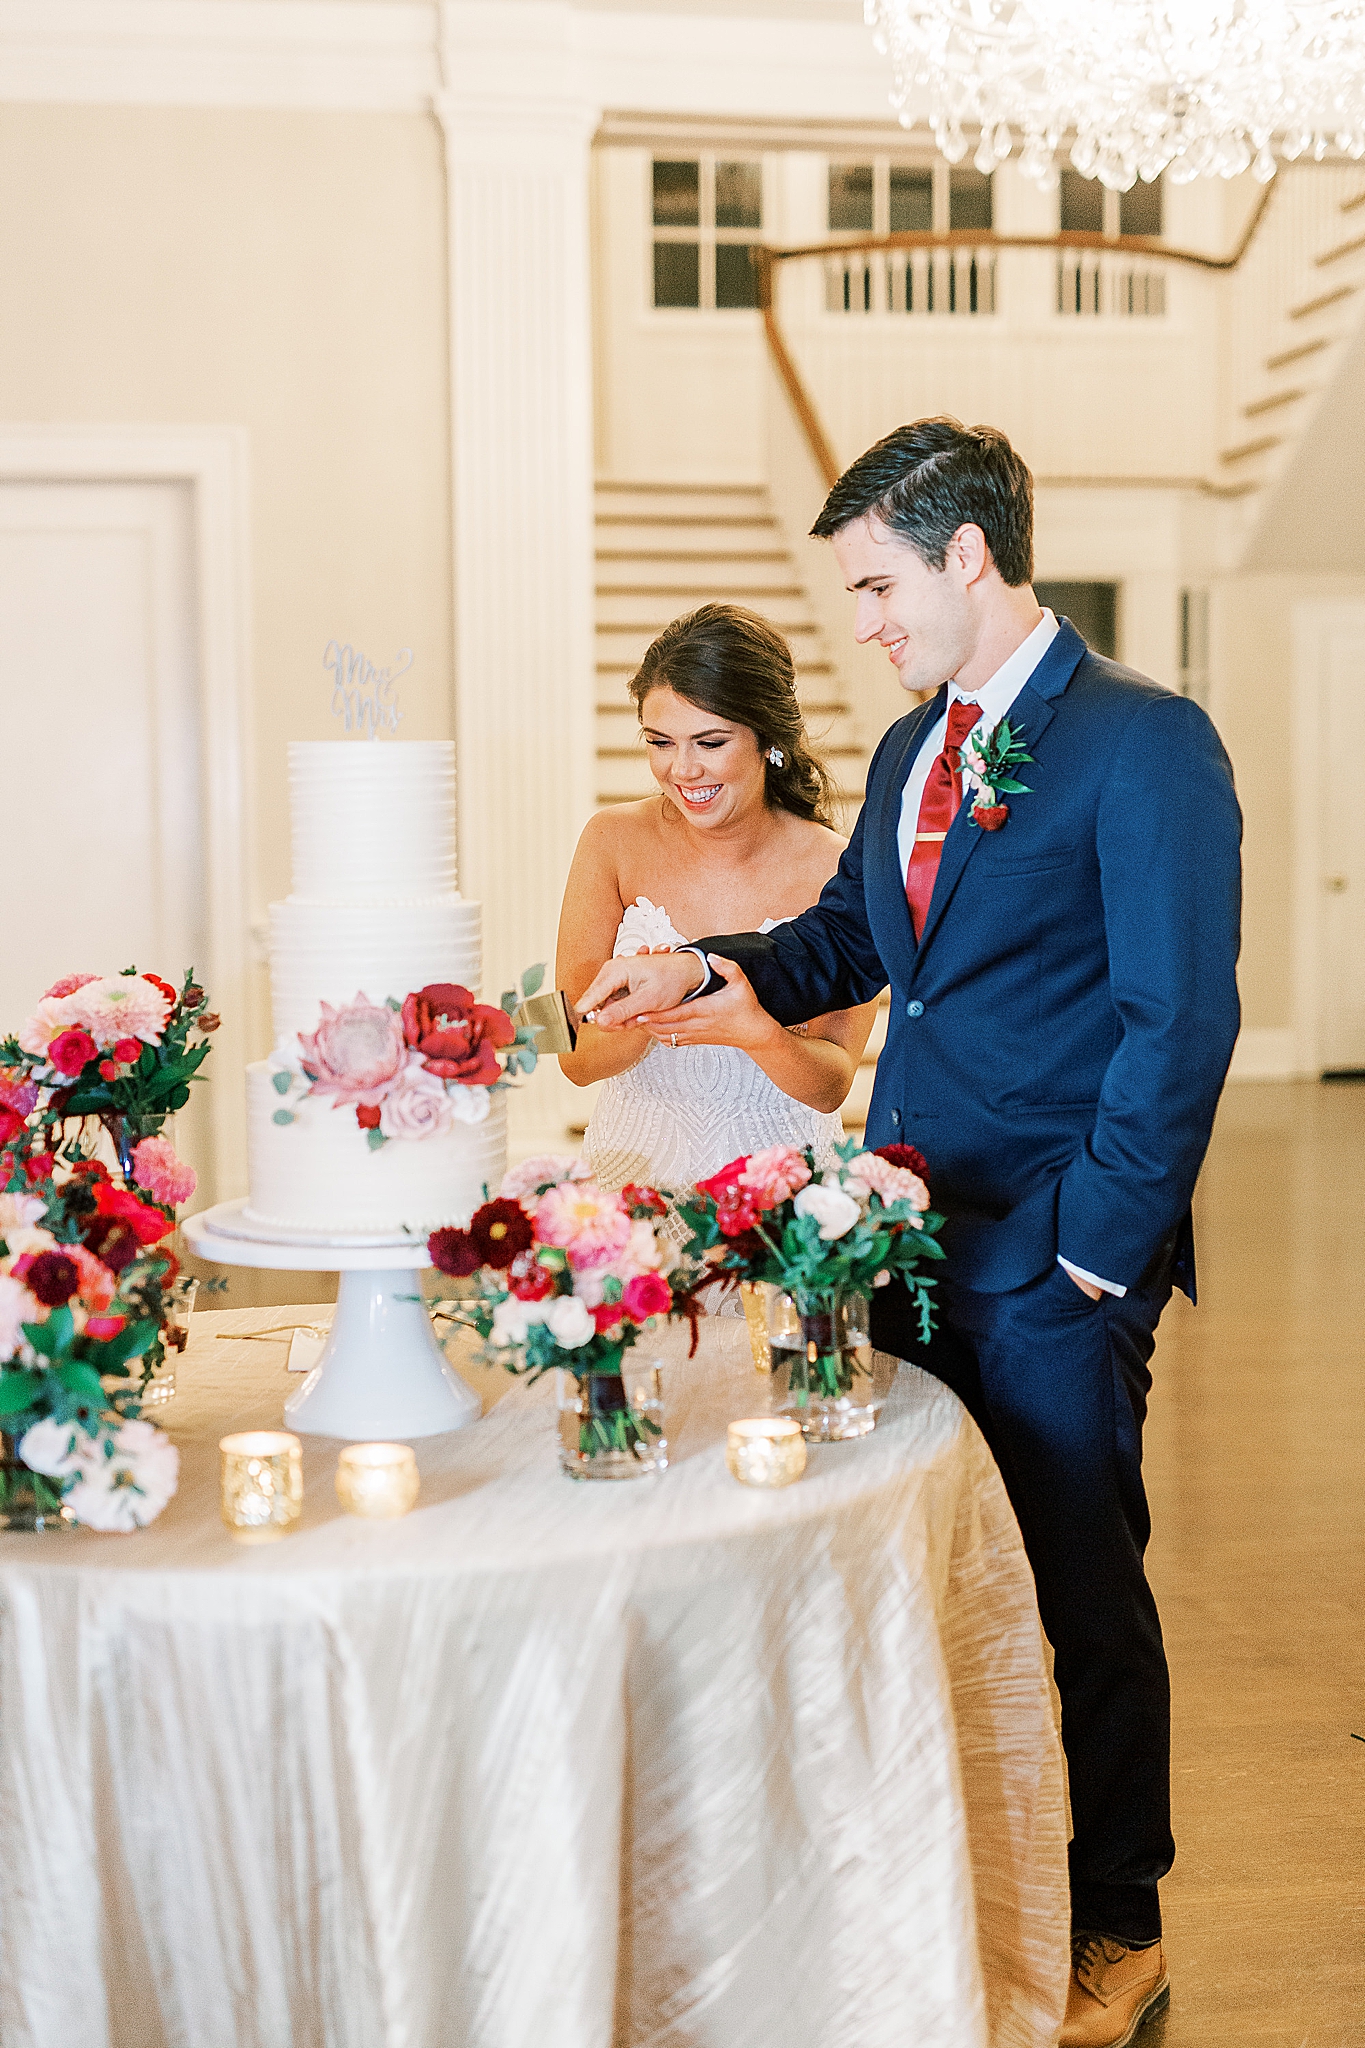 wedding cake cutting at Separk Mansion